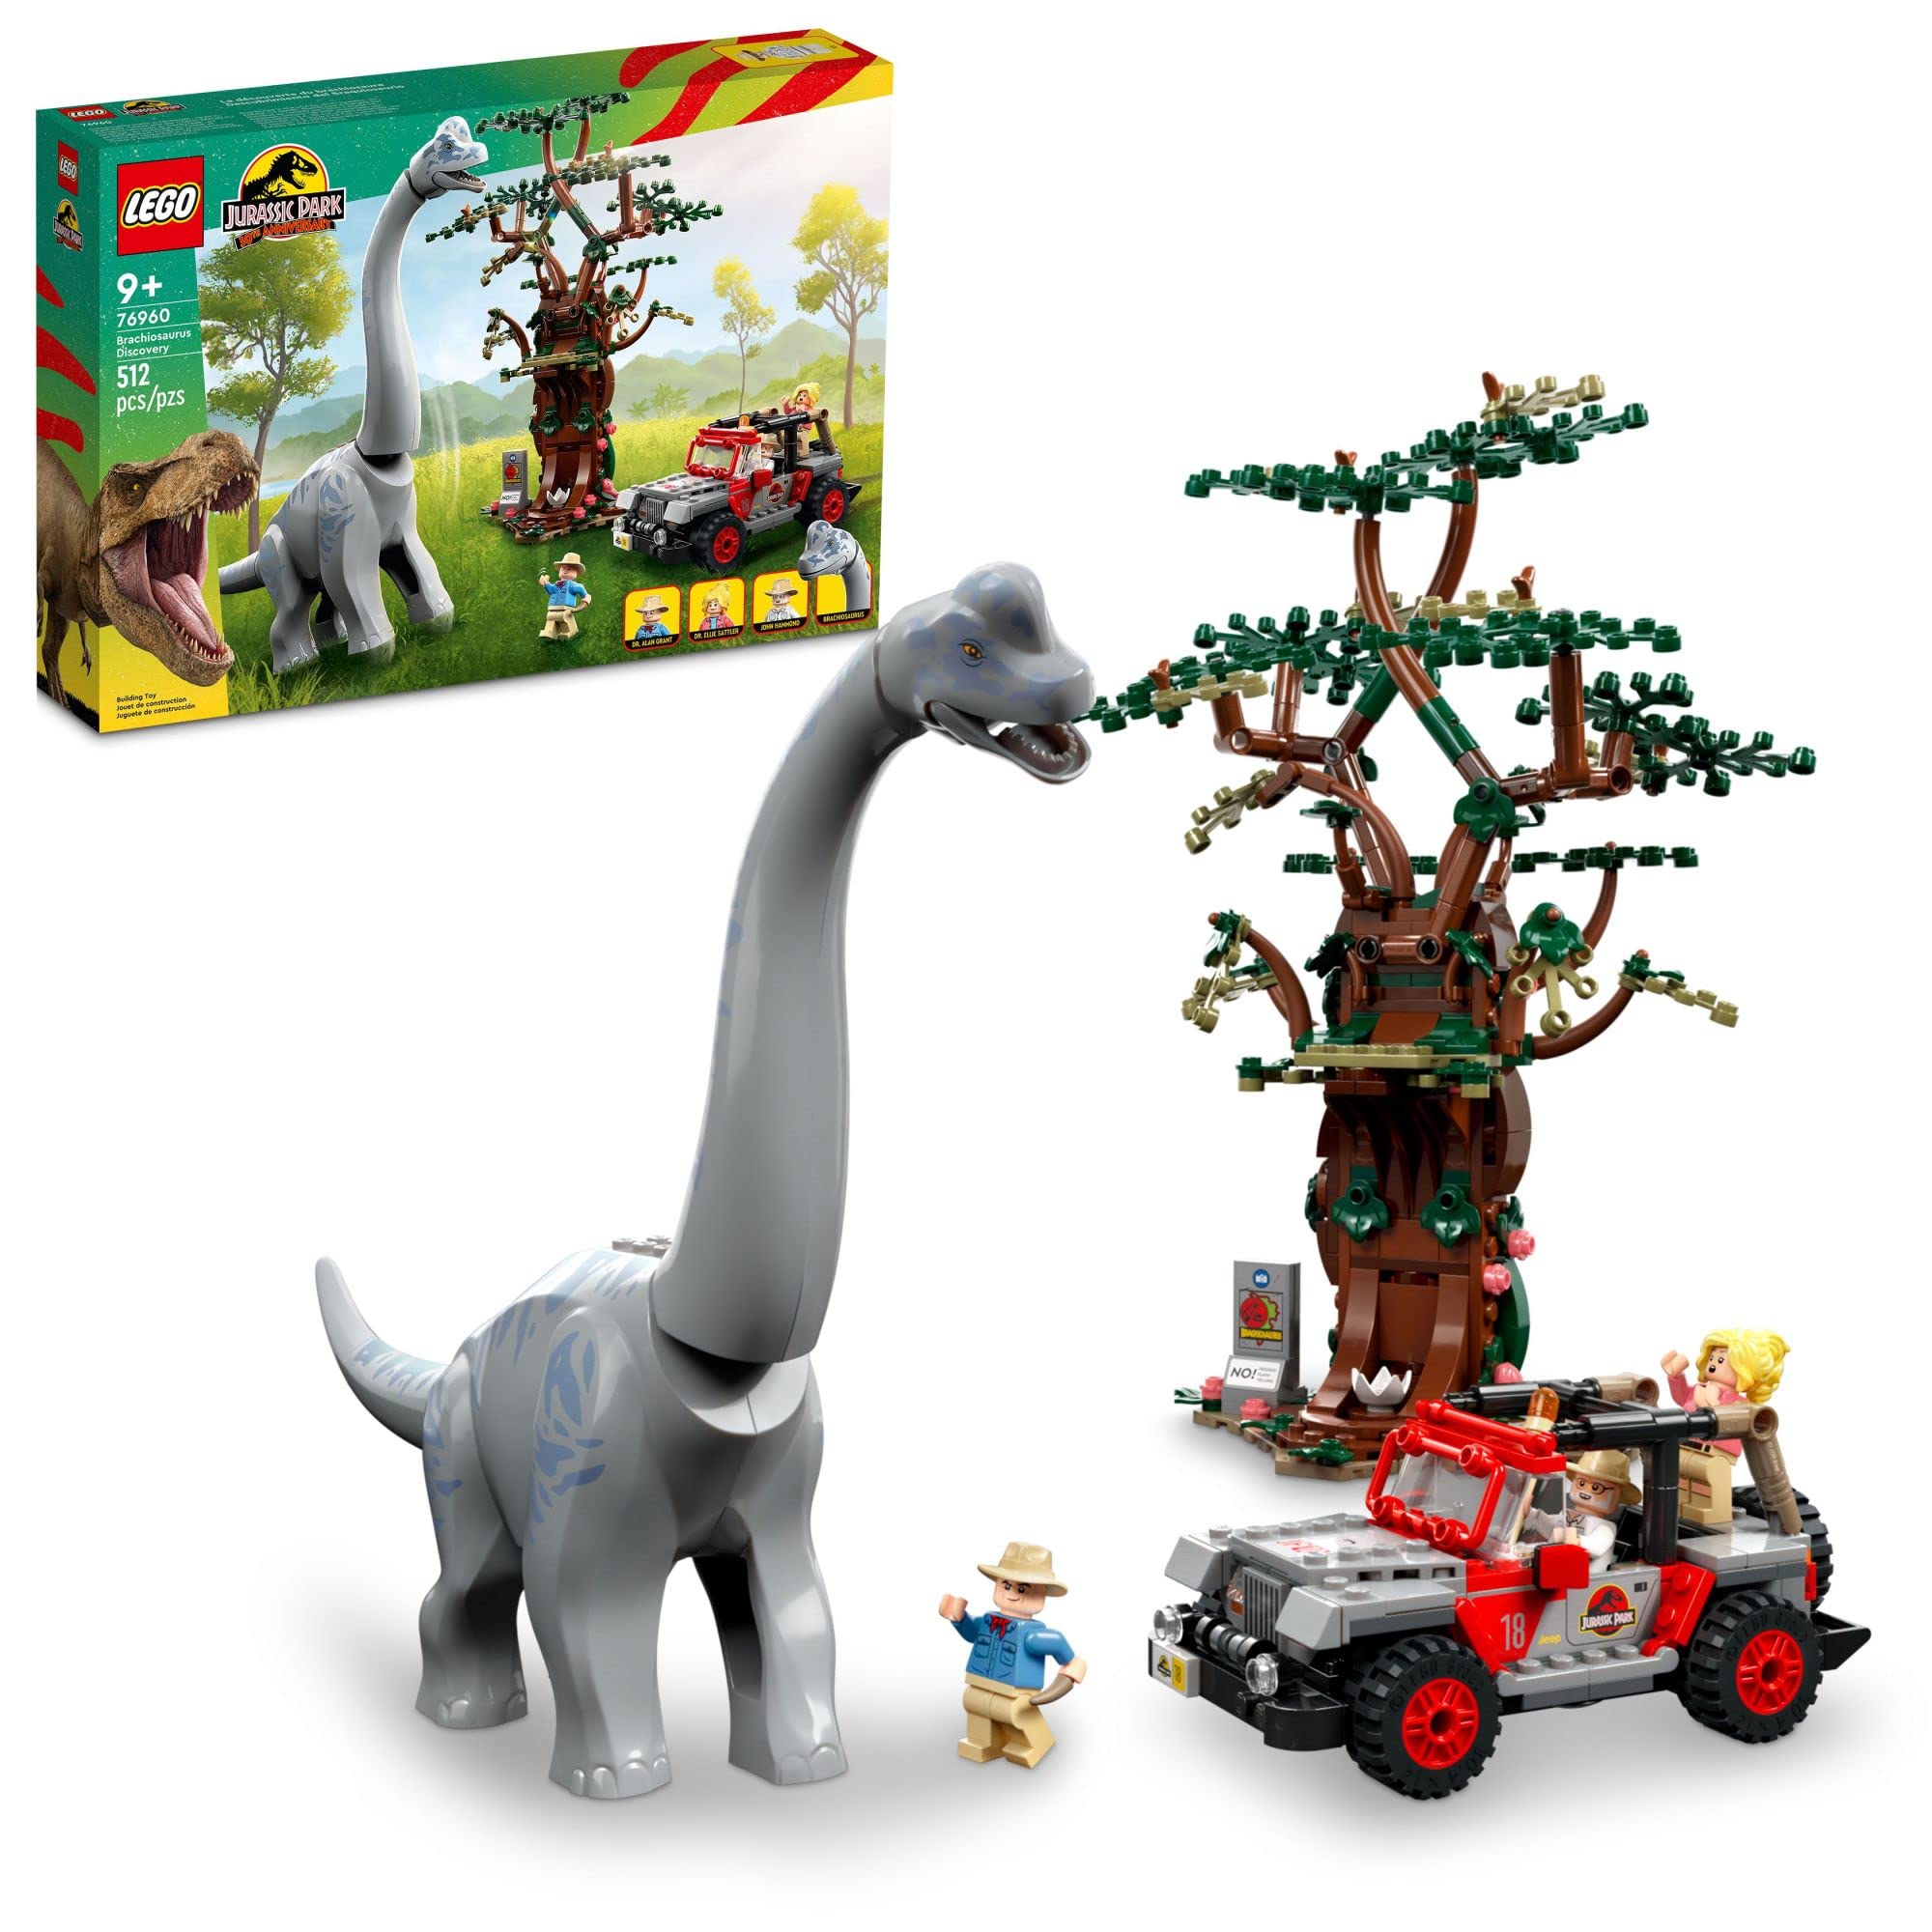  LEGO Jurassic World Brachiosaurus Discovery 76960 Juguete de dinosaurio del 30 aniversario de Jurassic Park; Con una gran figura de dinosaurio y un auto de juguete Jeep Wrangler construido en ladrillos;...